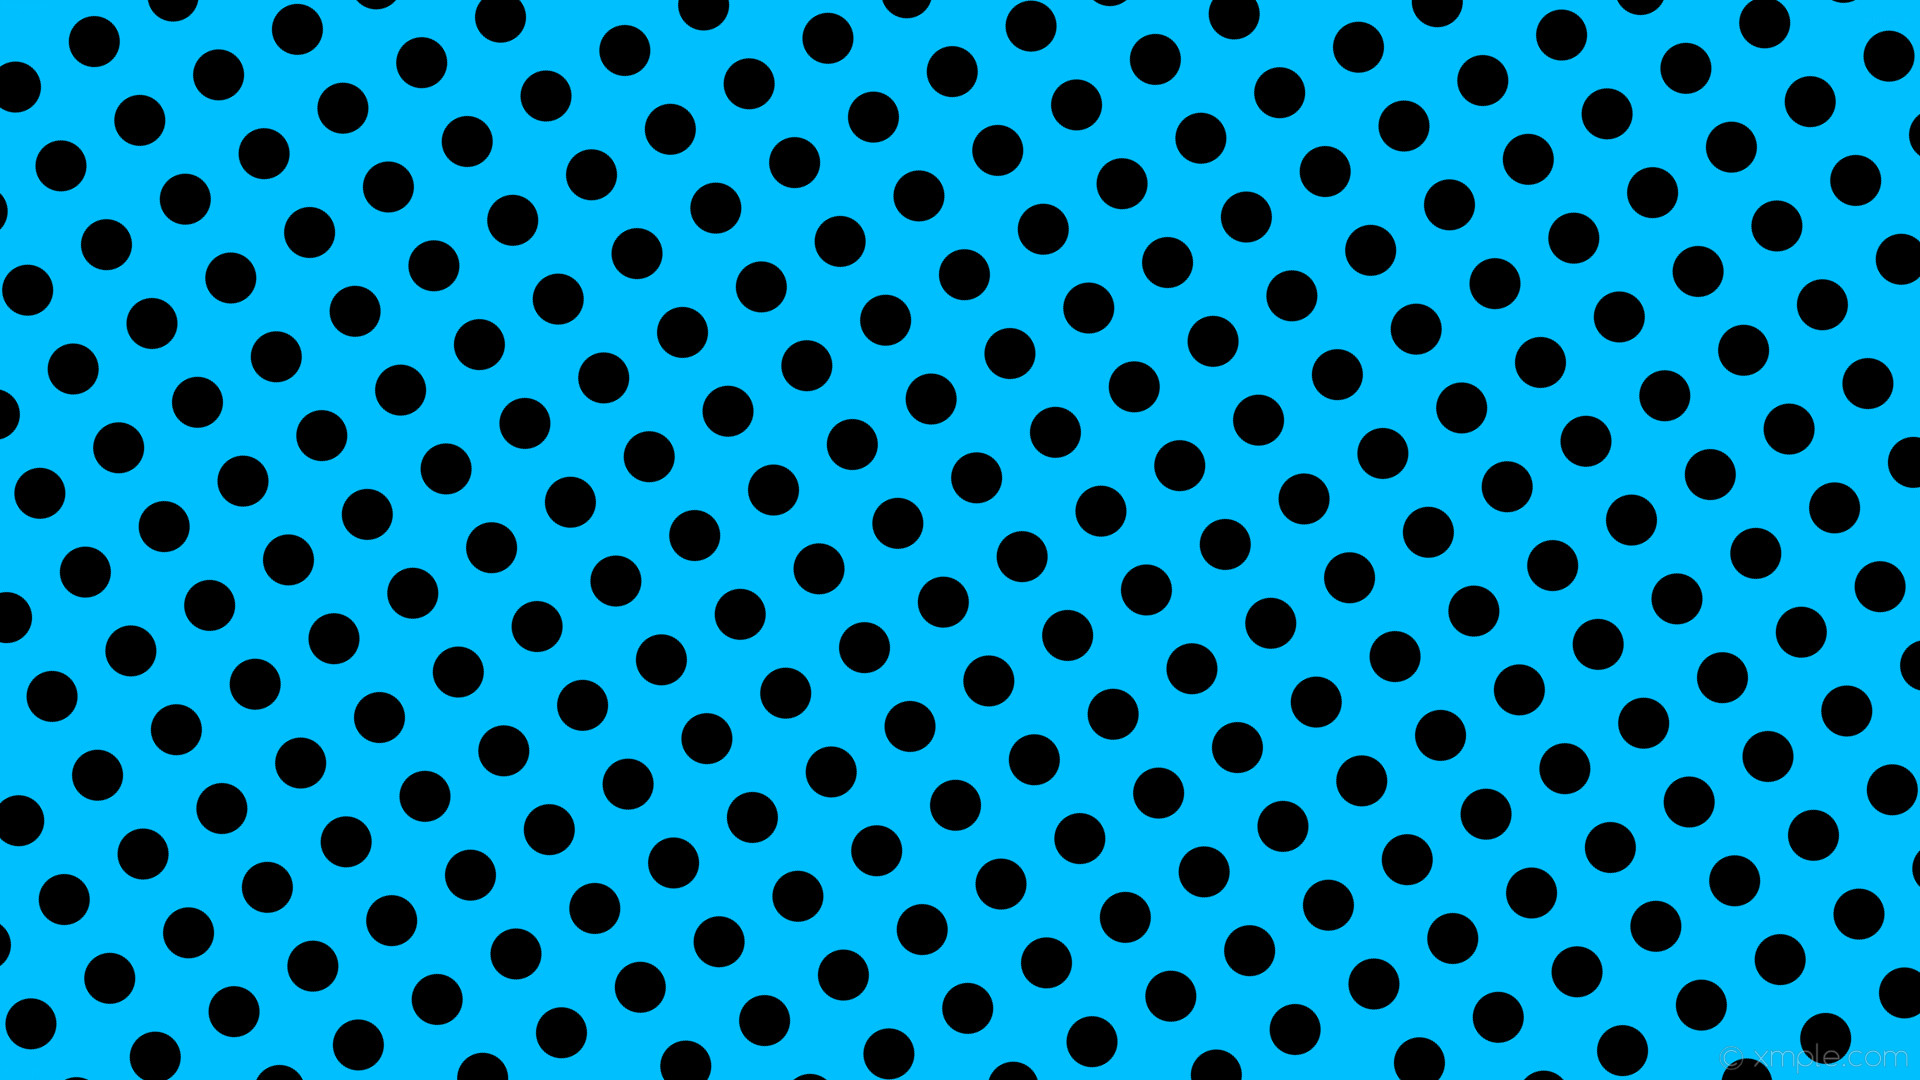 1920x1080 wallpaper black spots blue polka dots deep sky blue #00bfff #000000 30Â° 51px